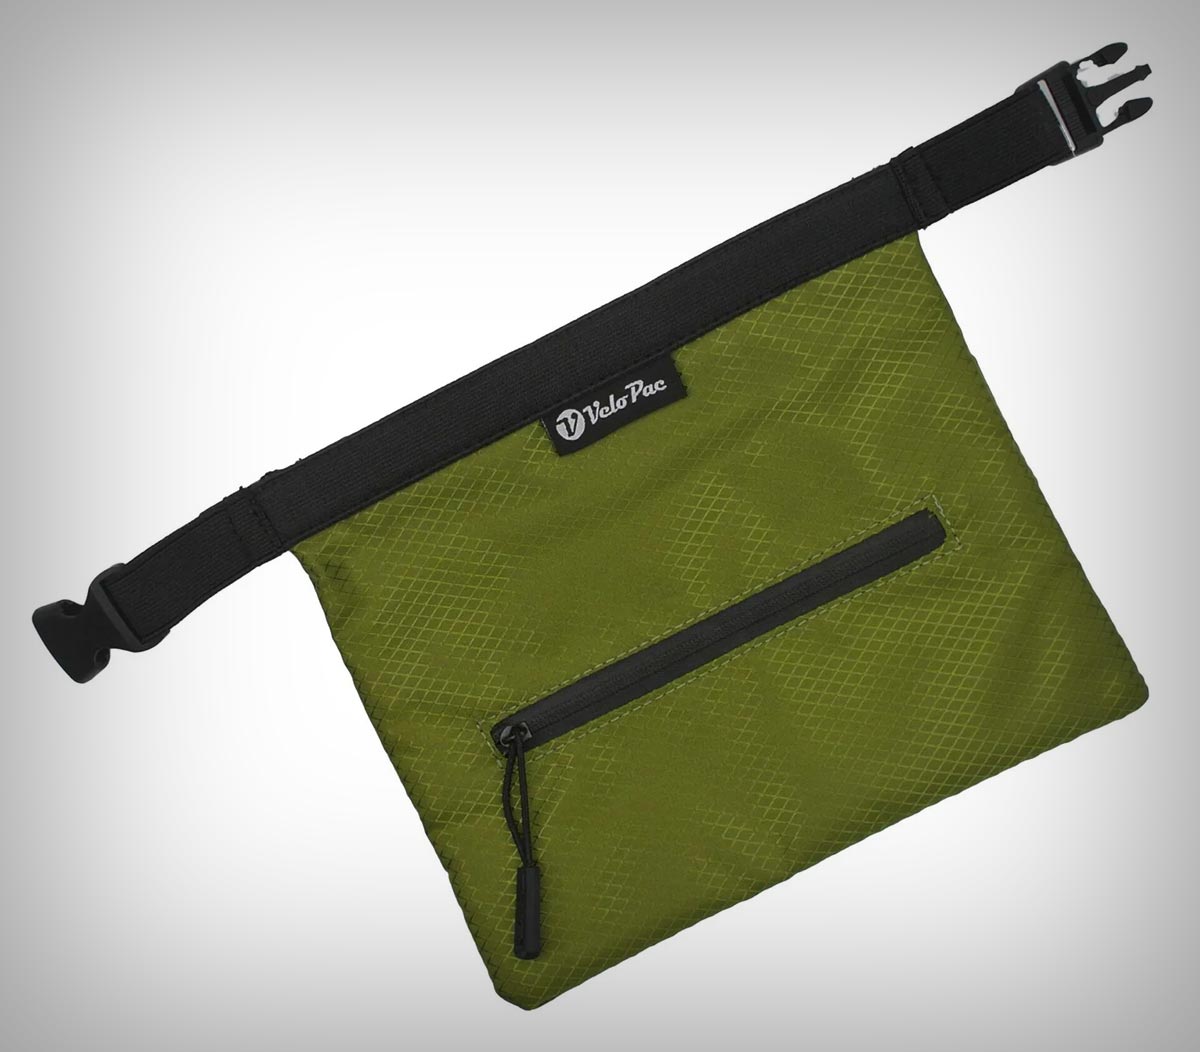 VeloPac RidePac Útil Pro, la versión mejorada de una bolsa impermeable de bolsillo para llevar todo lo necesario